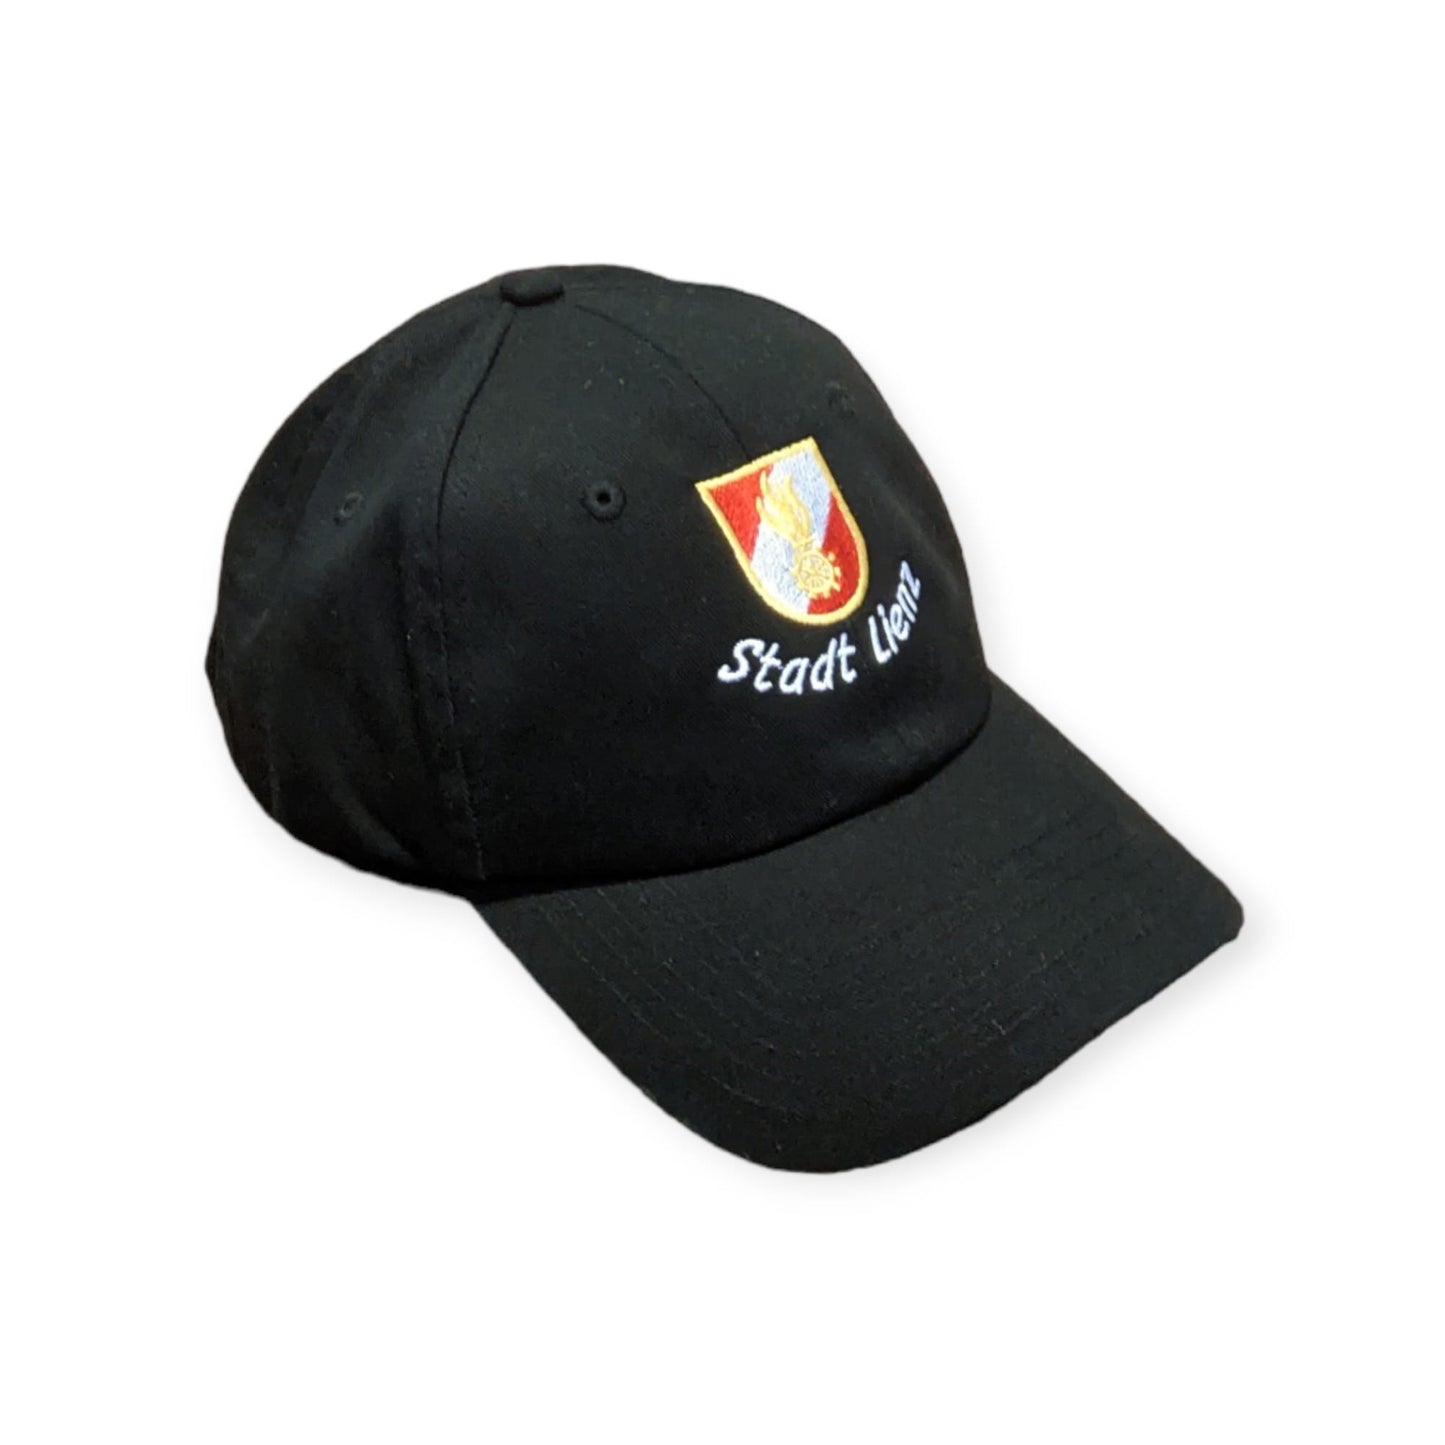 Feuerwehr-Baseballkappe mit Korpsabzeichen und Wunschtext oder Ortsname